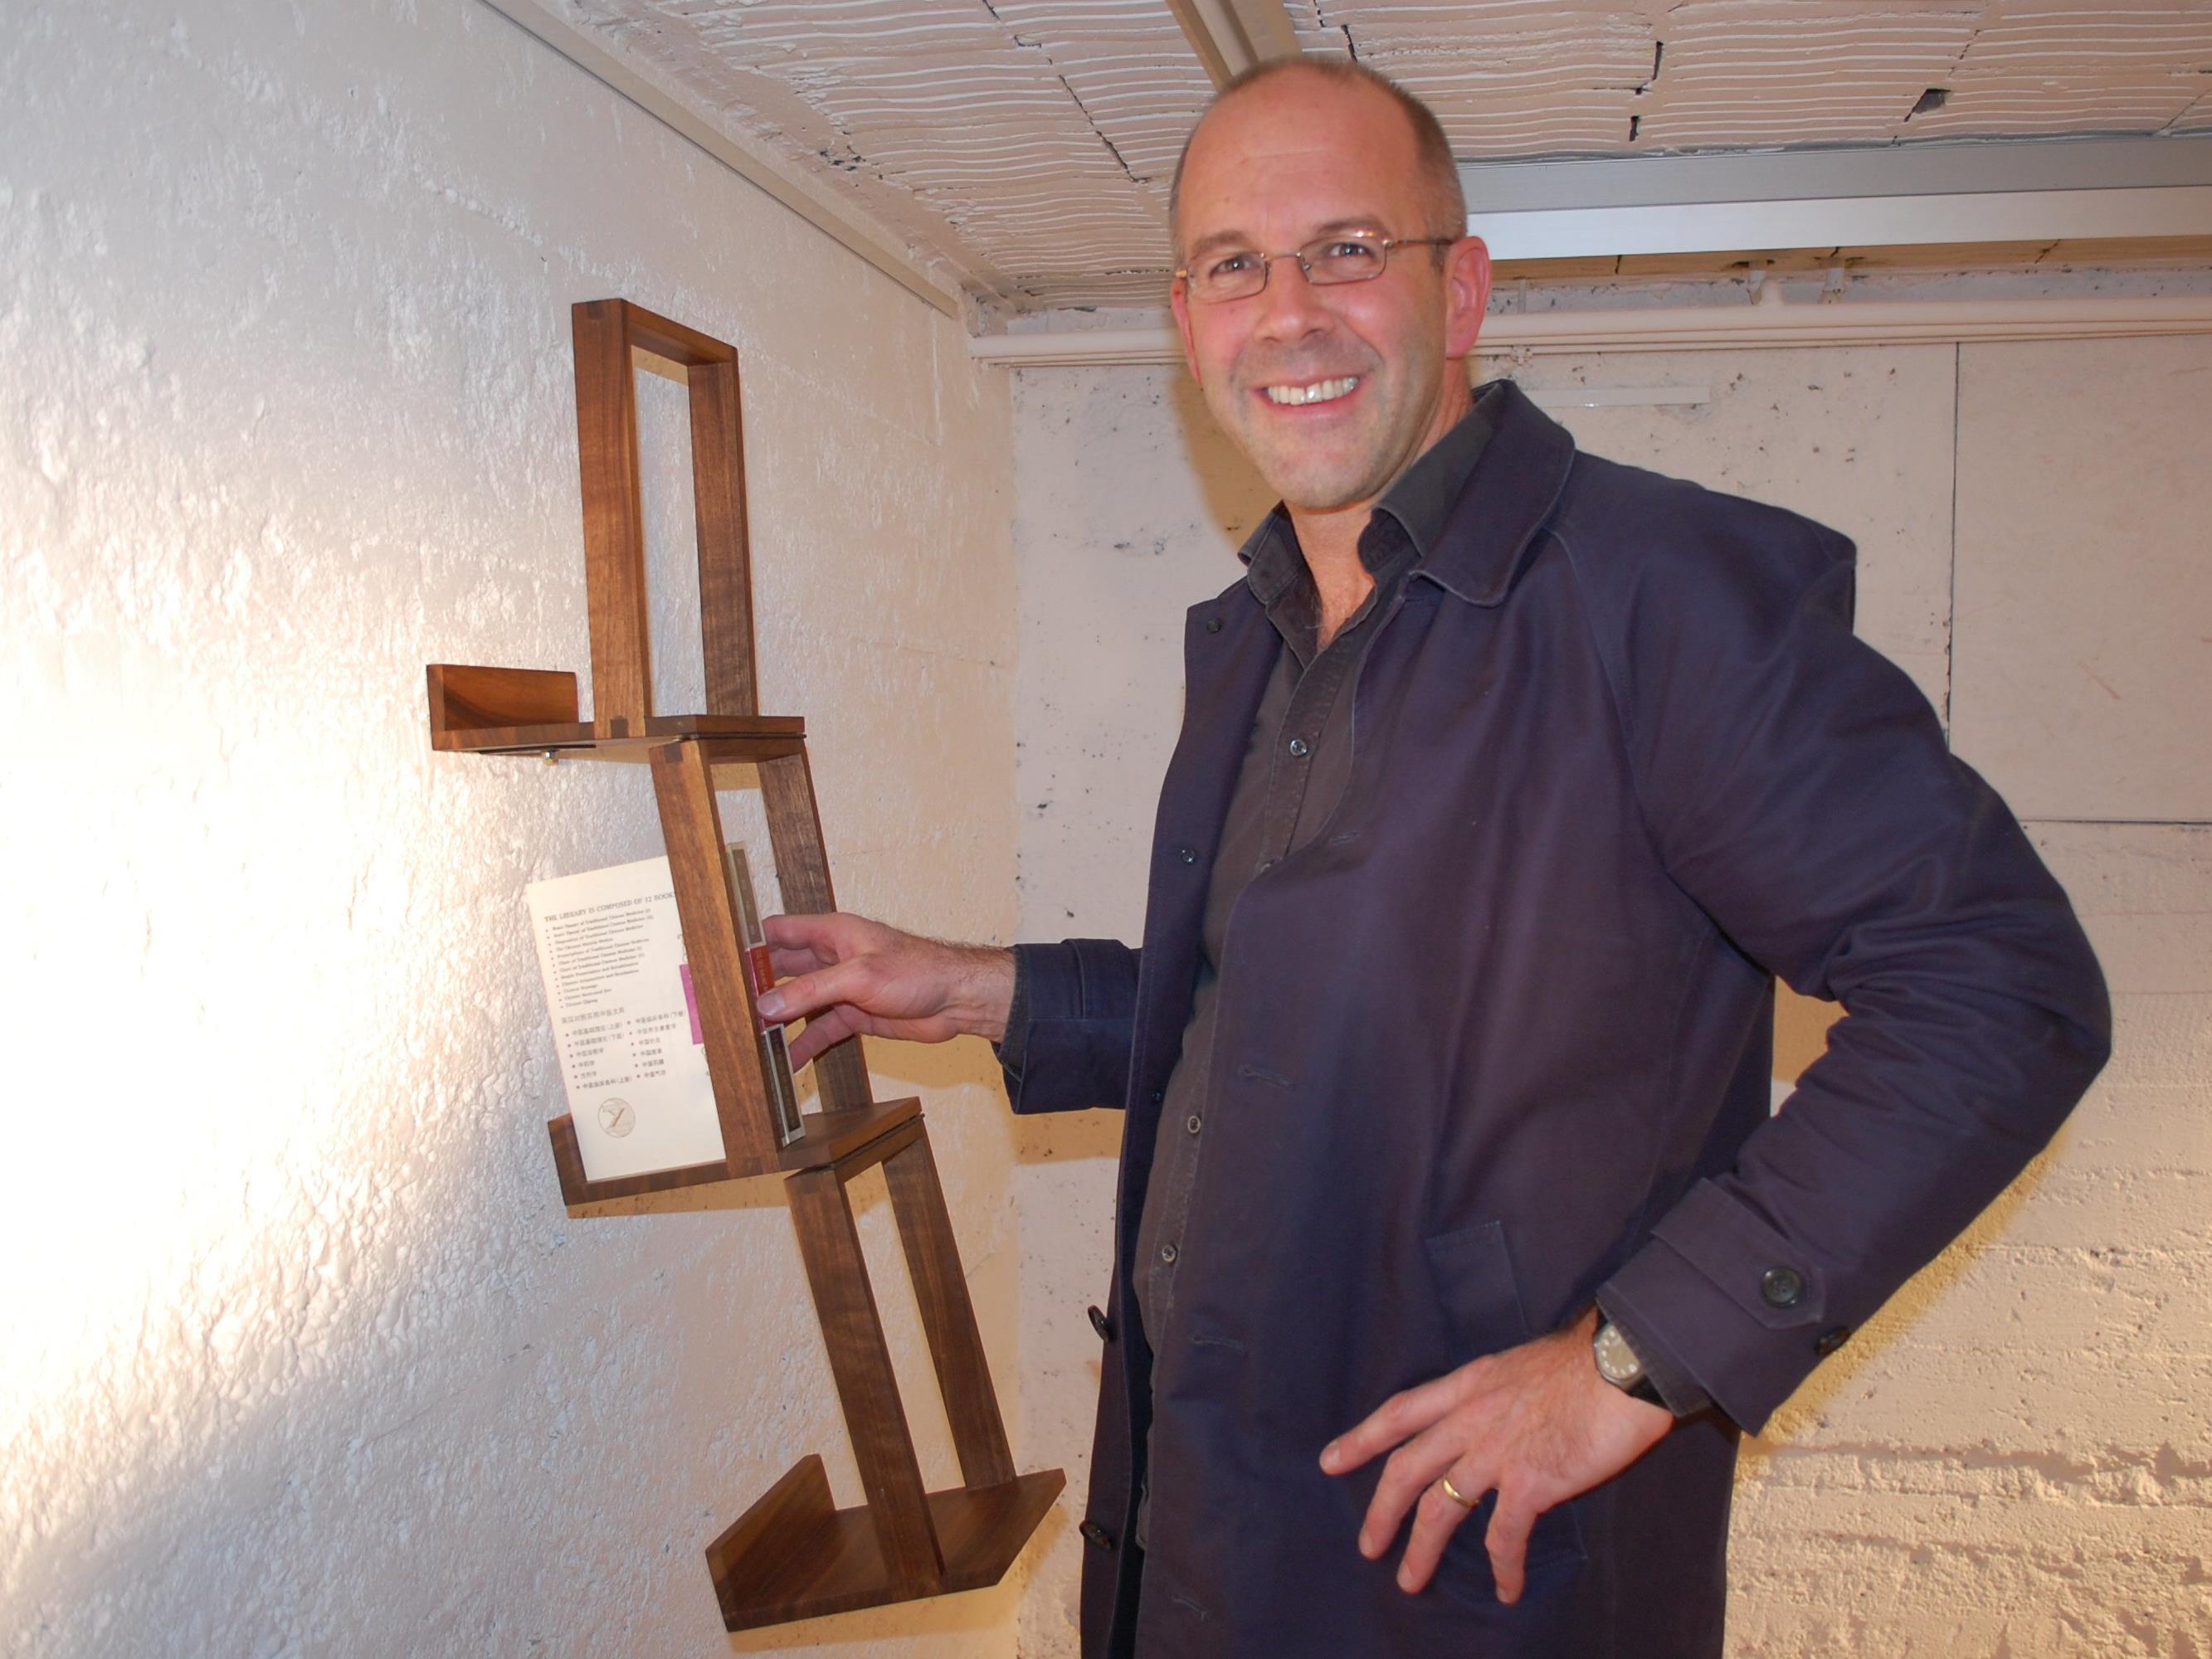 Galeriebetreiber Johann Trippolt freute sich erstmals einen Designkünstler in der MAP Kellergalerie zu begrüßen.